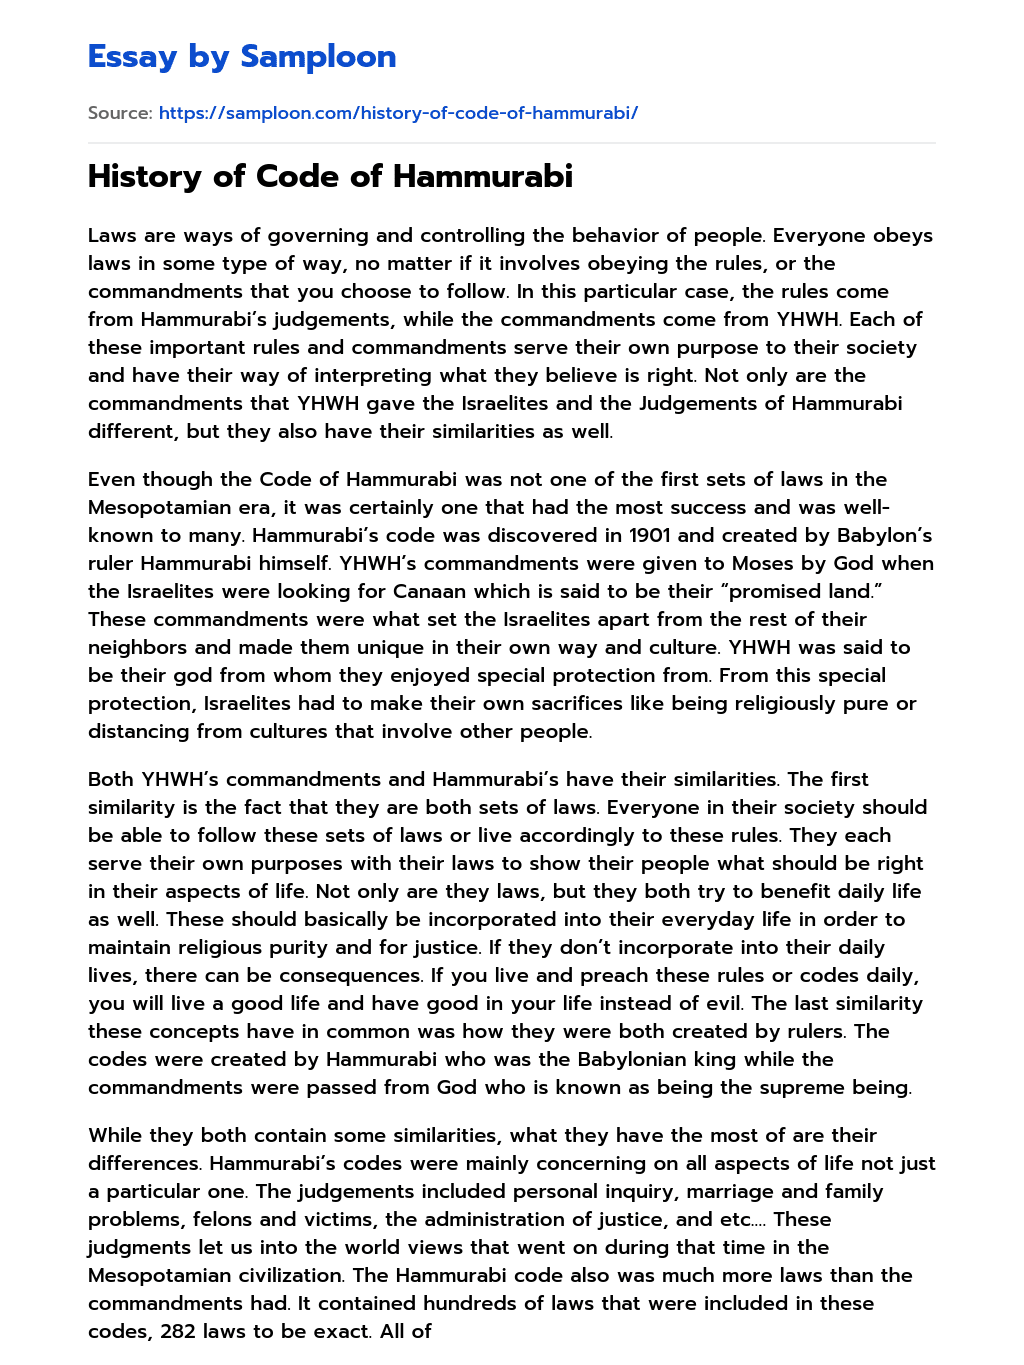 History of Code of Hammurabi essay